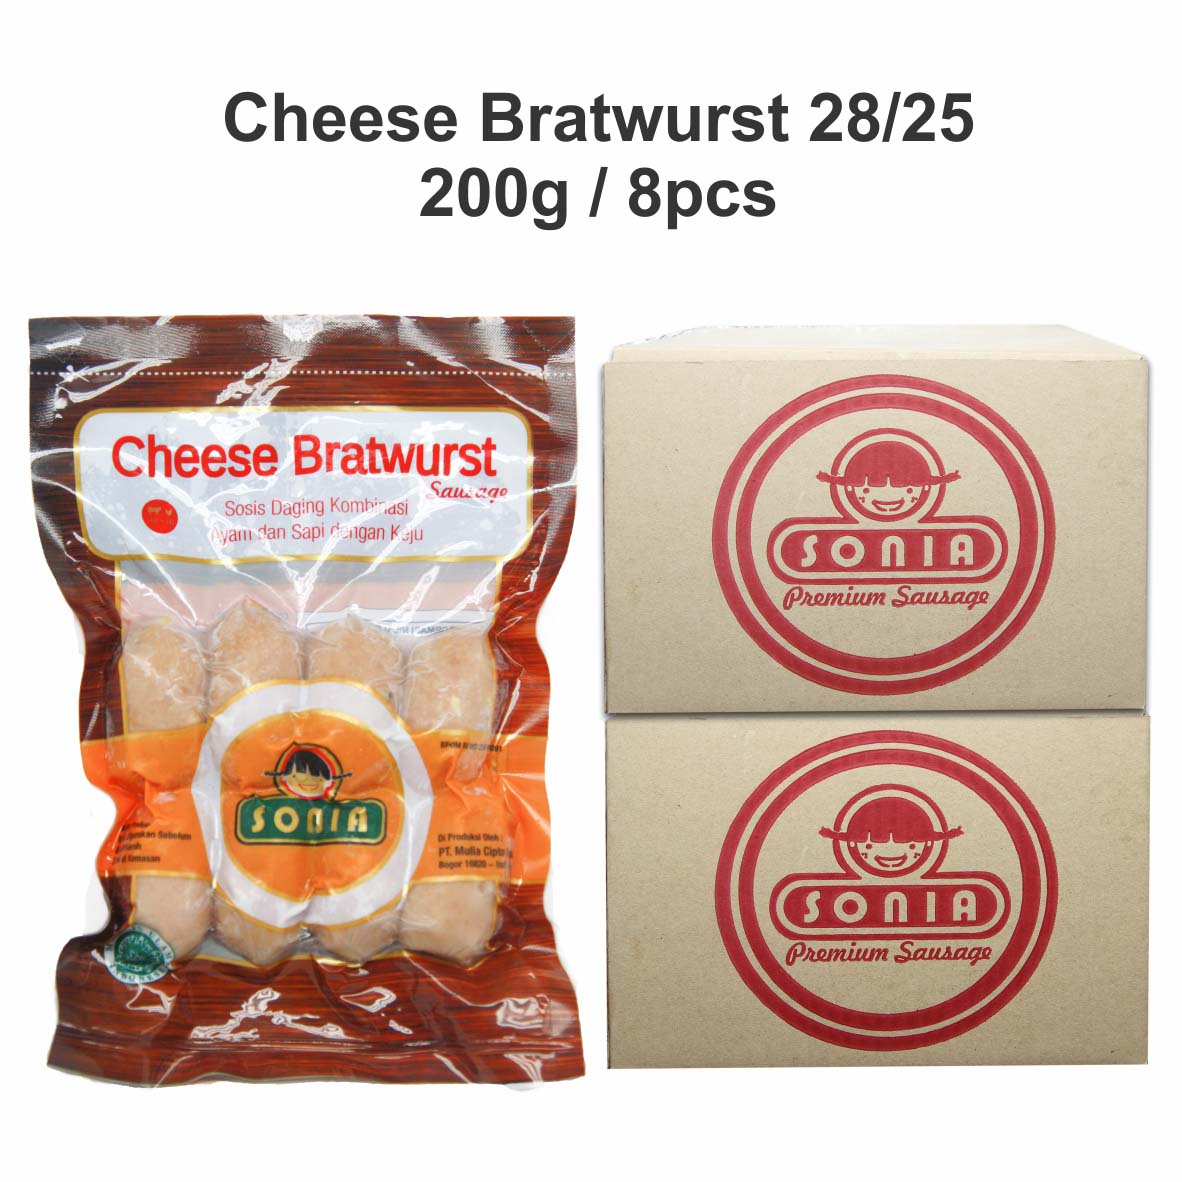 Cheese Bratwurst